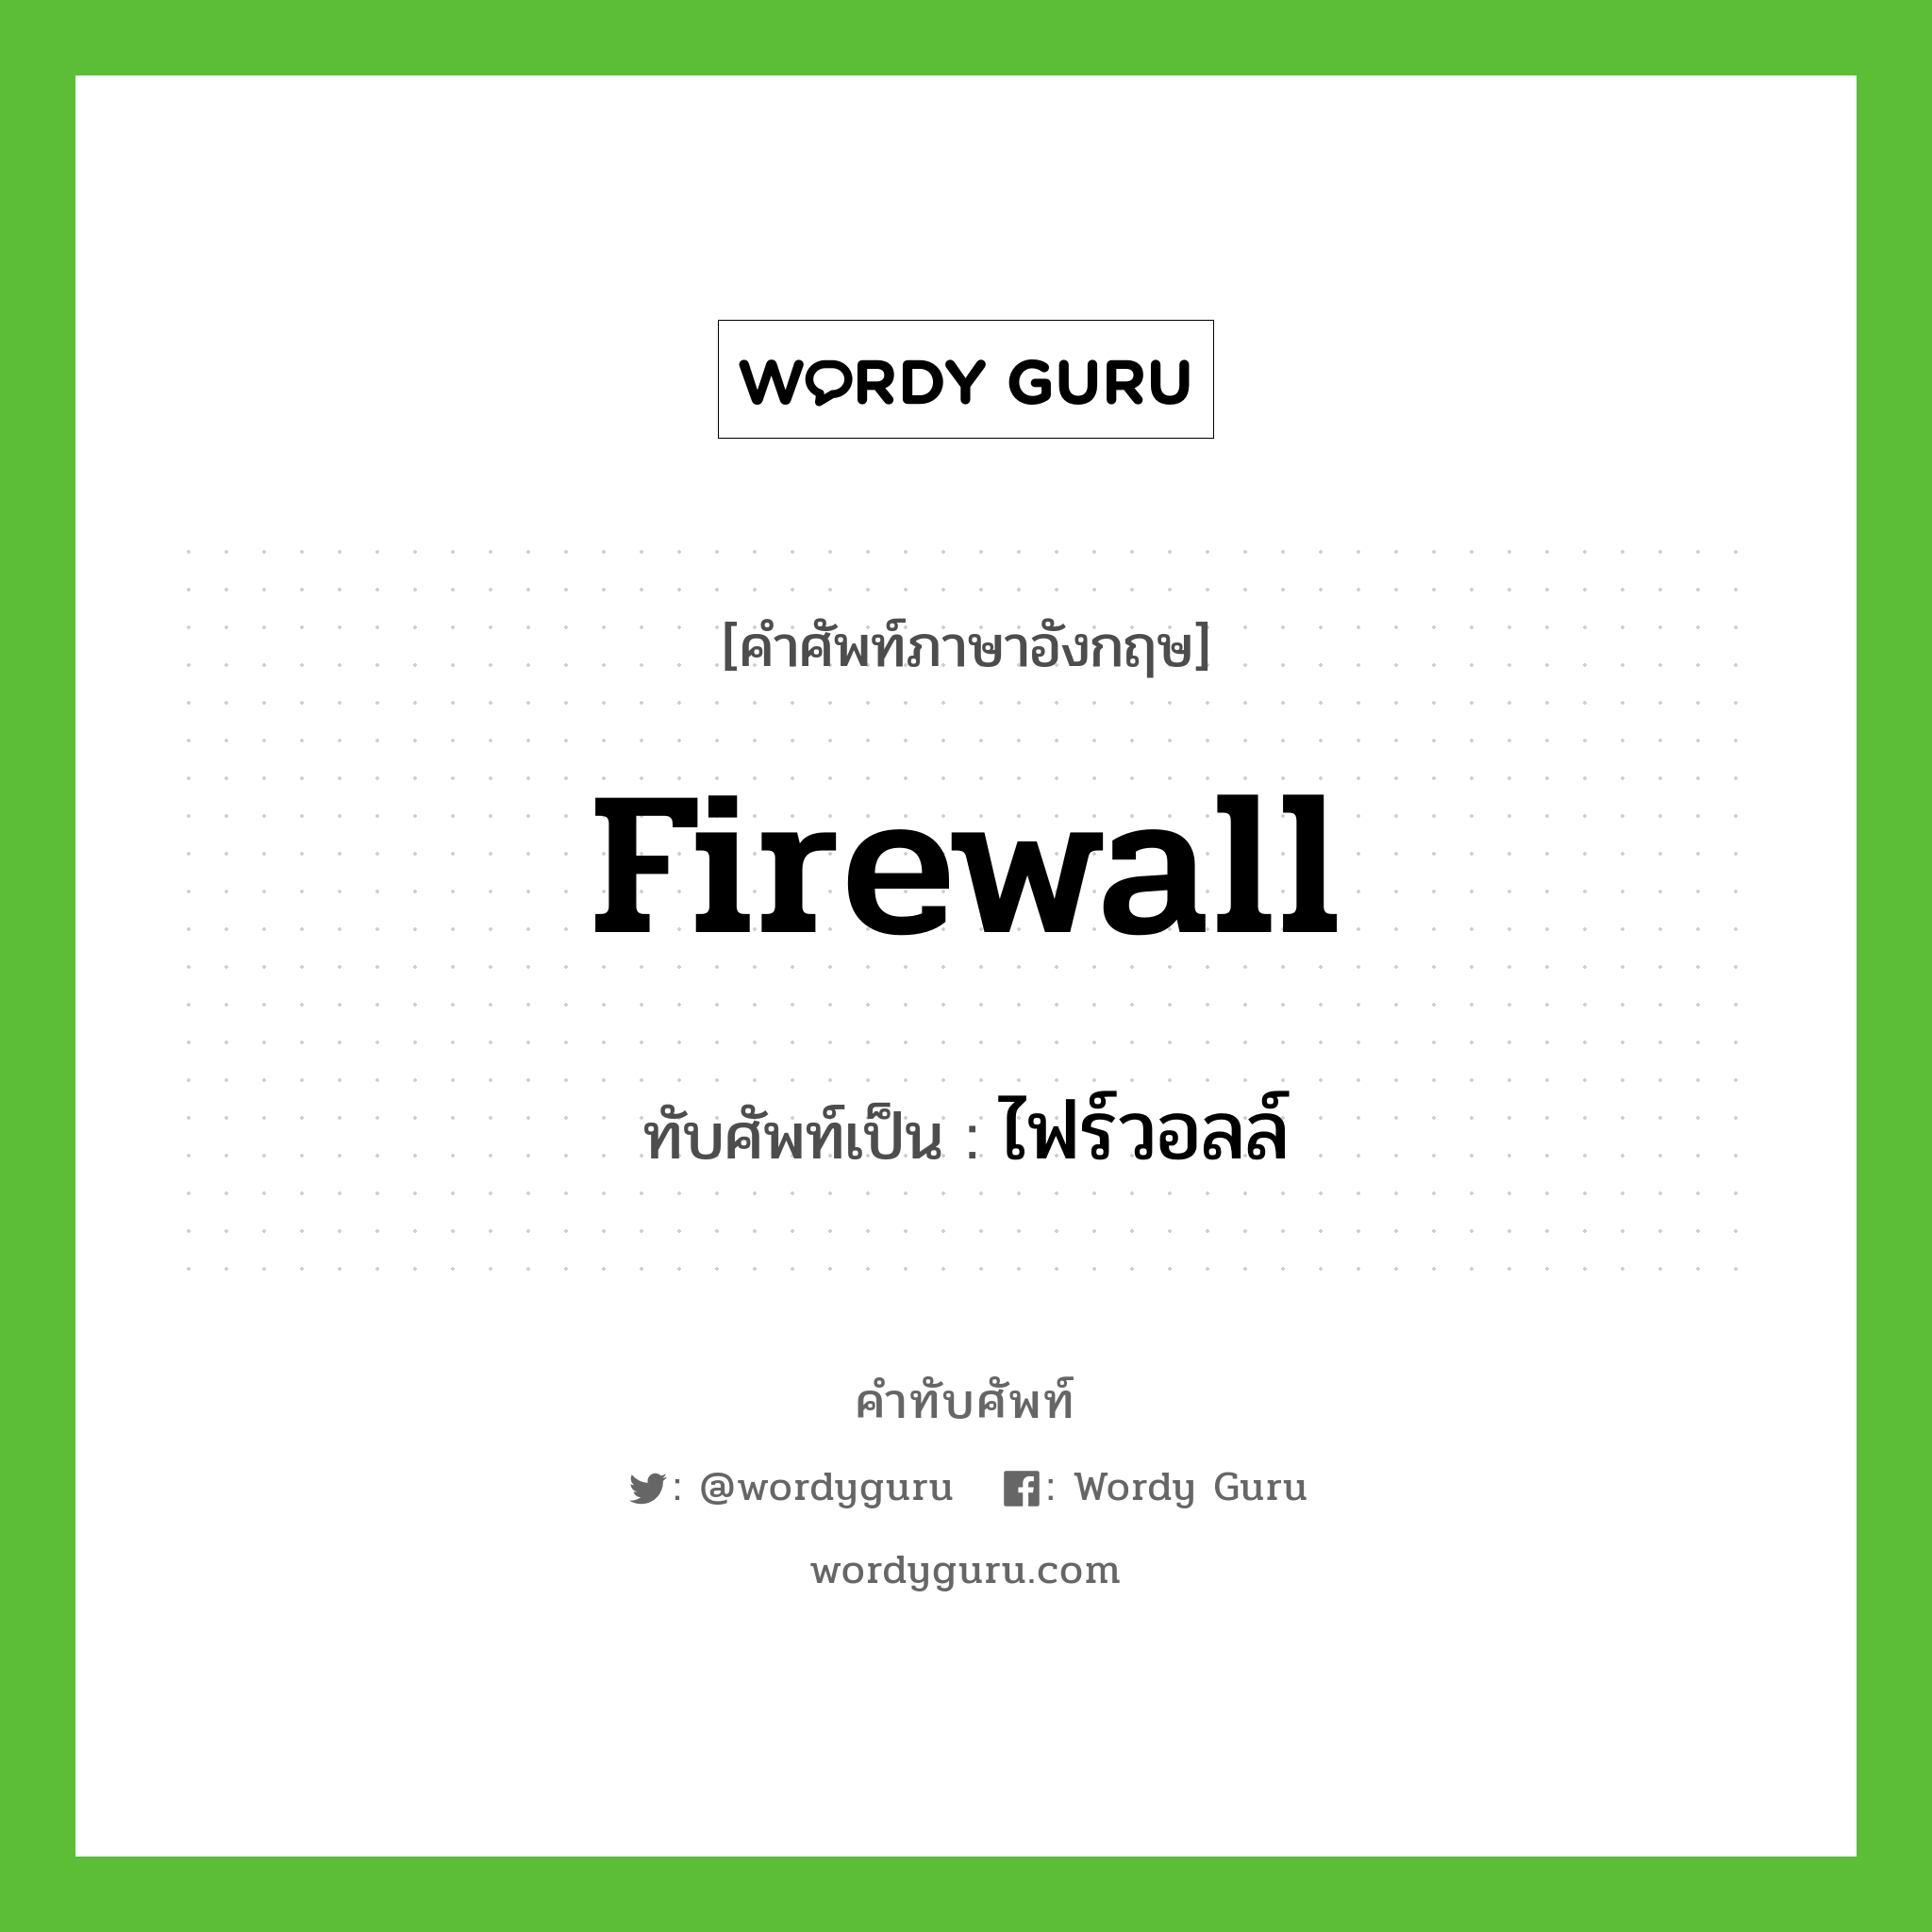 firewall เขียนเป็นคำไทยว่าอะไร?, คำศัพท์ภาษาอังกฤษ firewall ทับศัพท์เป็น ไฟร์วอลล์